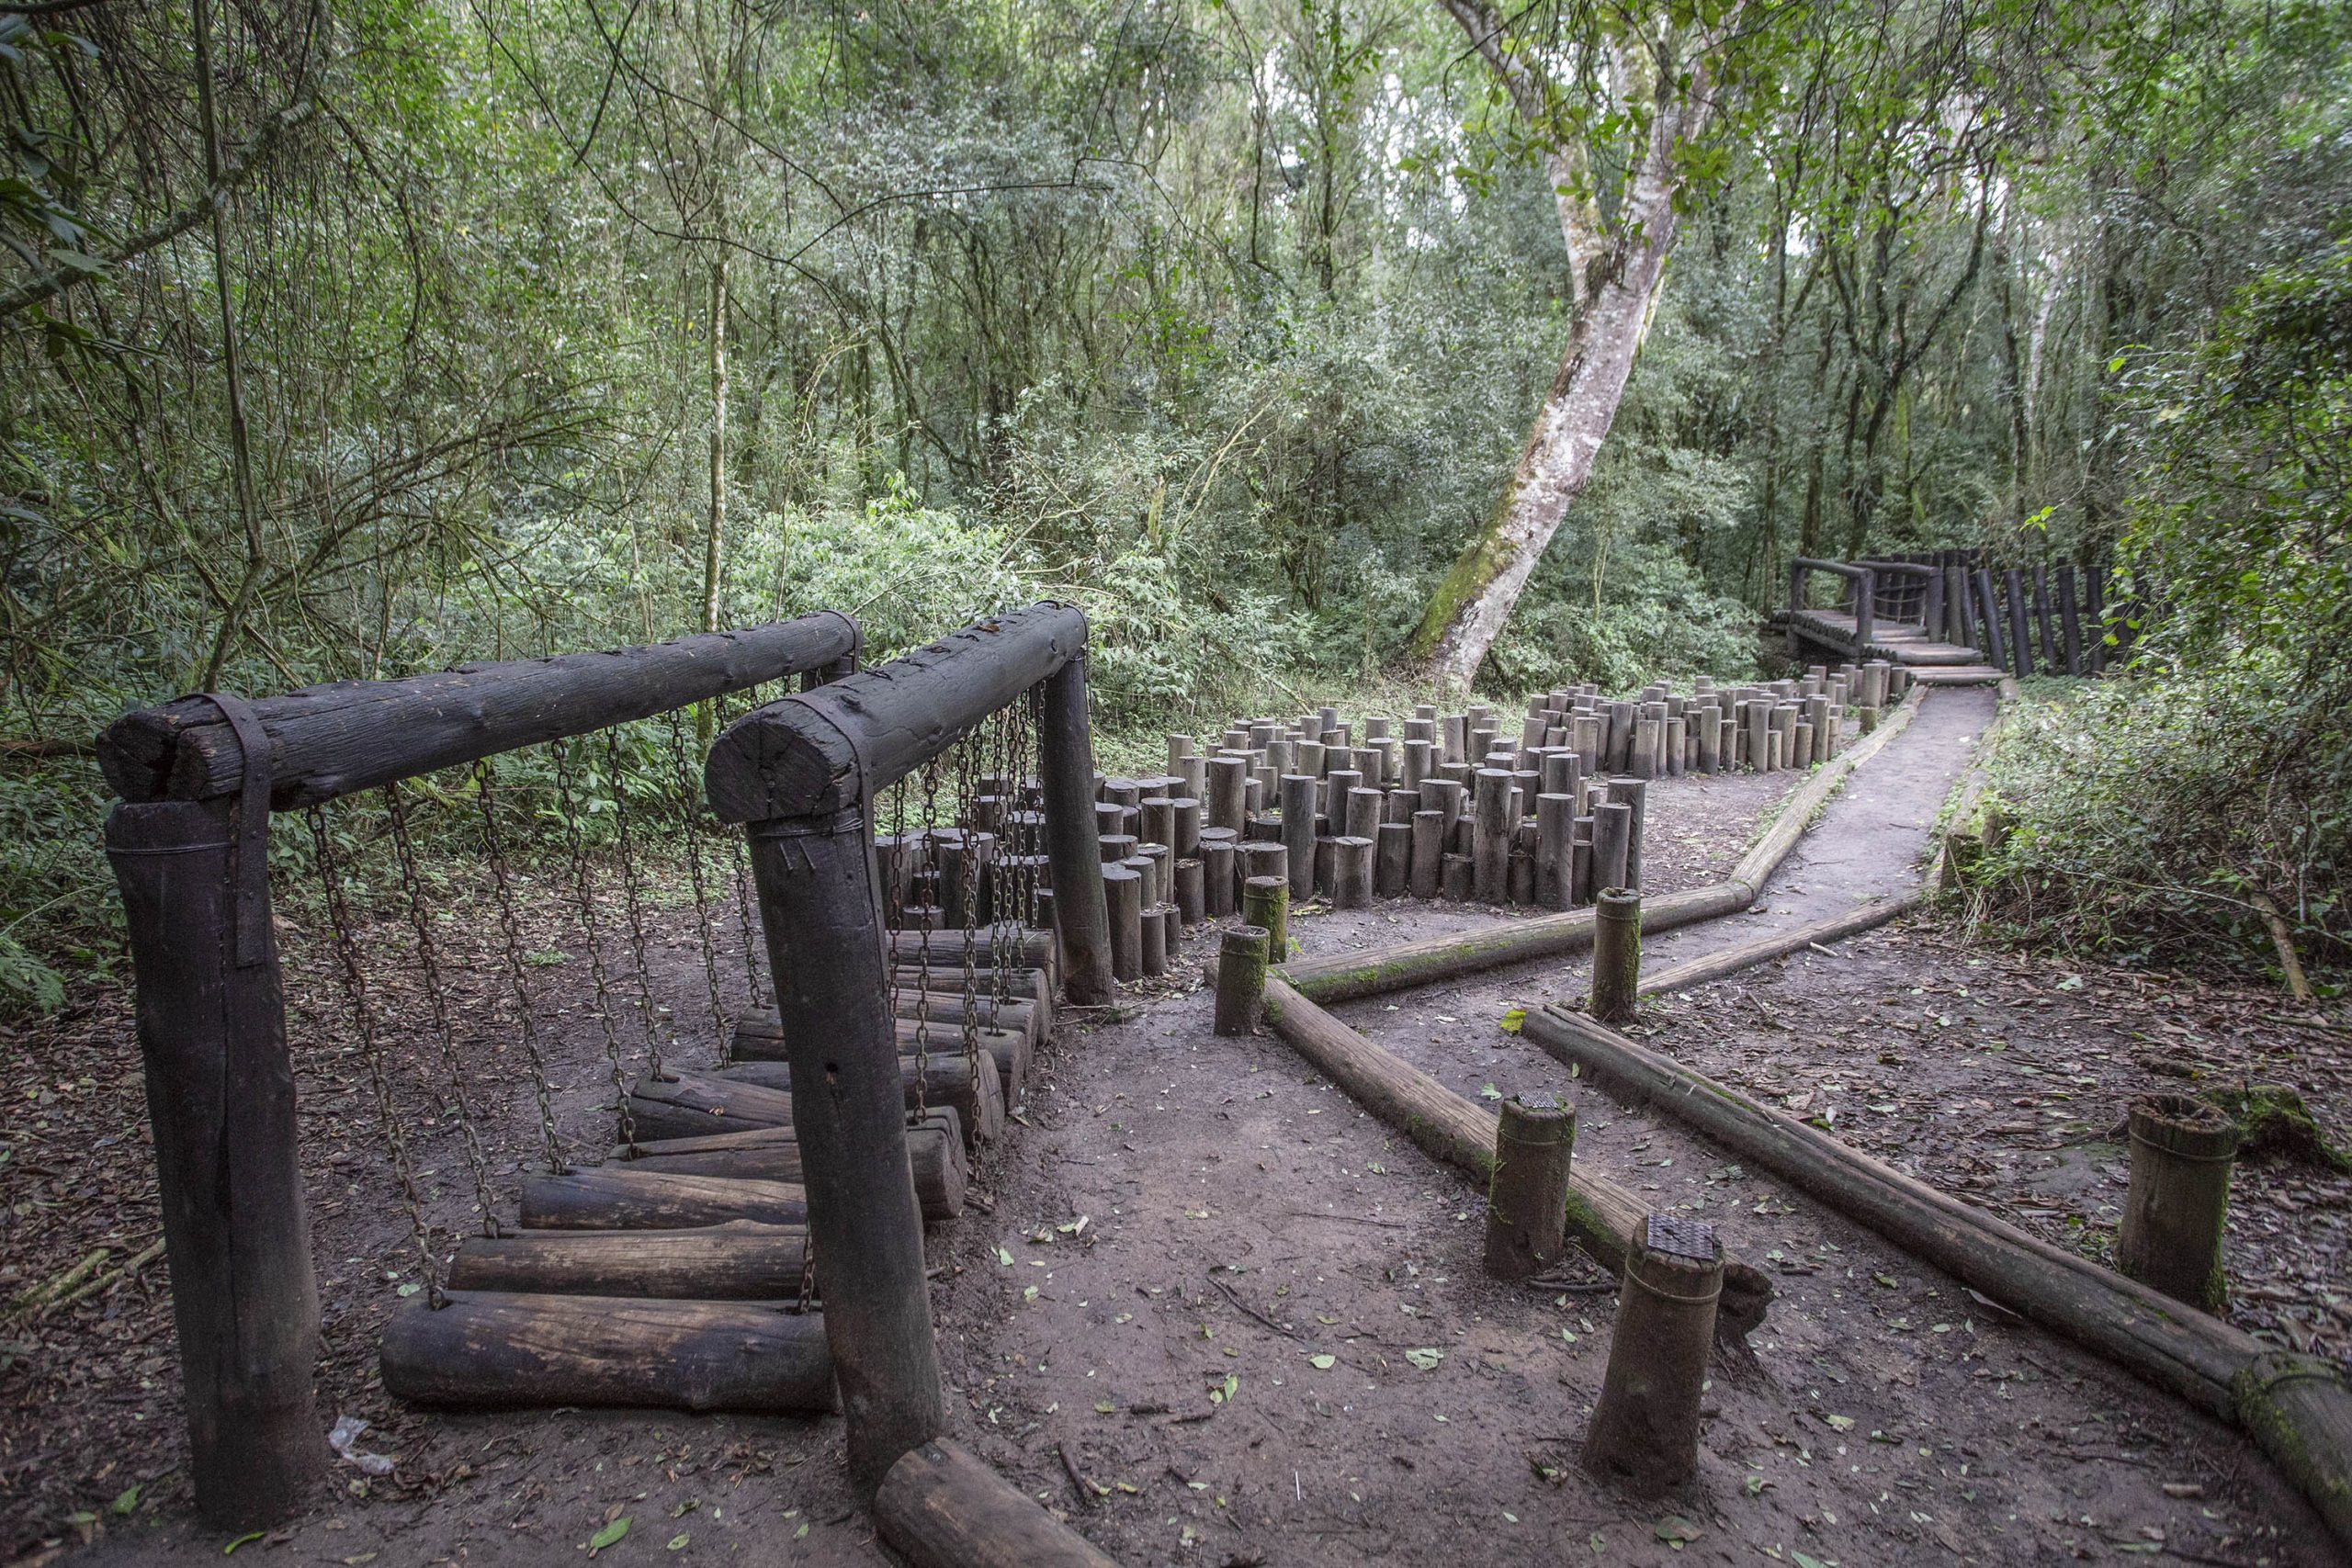 Bosque Reinhard Maack une trilha e arborismo no meio da natureza de Curitiba